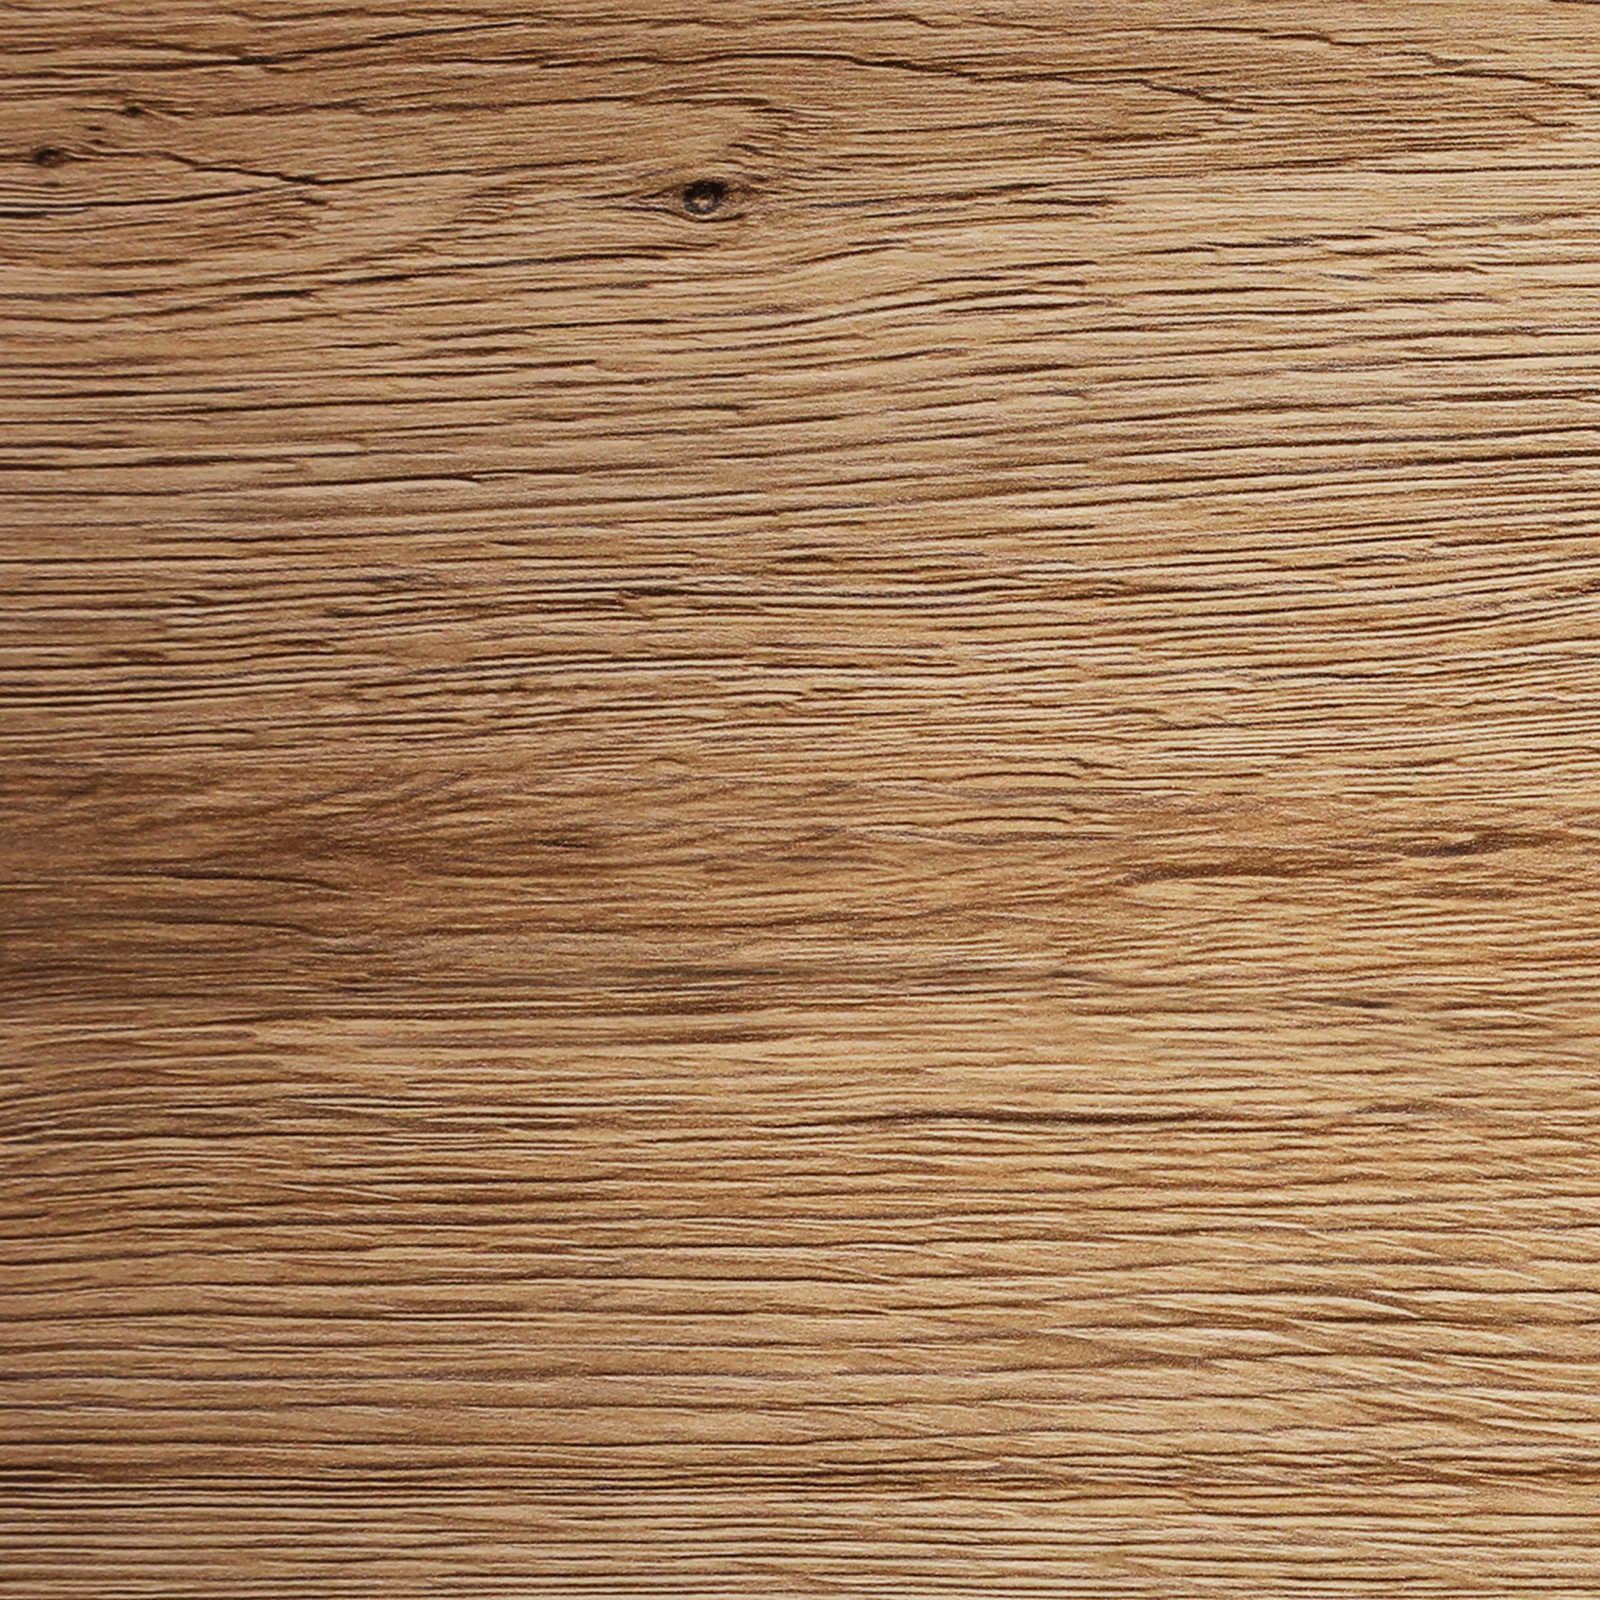             Tinta per legno »Oak« lucido di seta per interni ed esterni - 2,5 litri
        